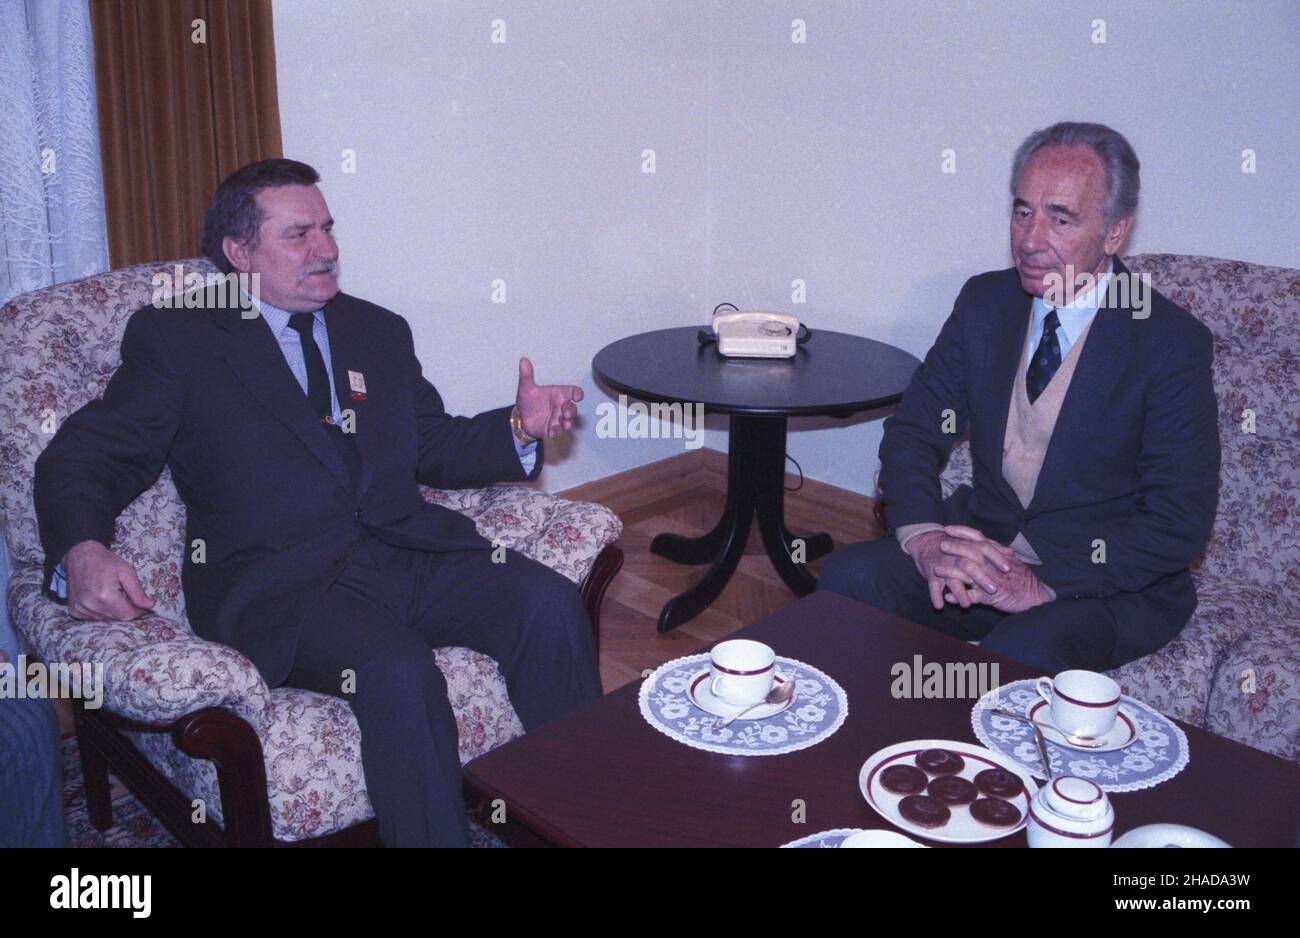 Gdañsk 29.11.1989. Wizyta izraelskiego wicepremiera i ministra finansów Szymona Peresa w Polsce (27-30 listopada 1989). Nz. spotkanie Szymona Peresa (P) z przewodnicz¹cym NSZZ Solidarnoœæ Lechem Wa³ês¹ (L). wb  PAP/Ireneusz Sobieszczuk         Gdansk, 29 November 1989. Israeli deputy Prime Minister and Finance Minister Shimon Peres pays a visit to Poland (27-30 November 1989). Pictured: Shimon Peres (R) meets Solidarity leader Lech Walesa (L).   wb  PAP/Ireneusz Sobieszczuk Stock Photo